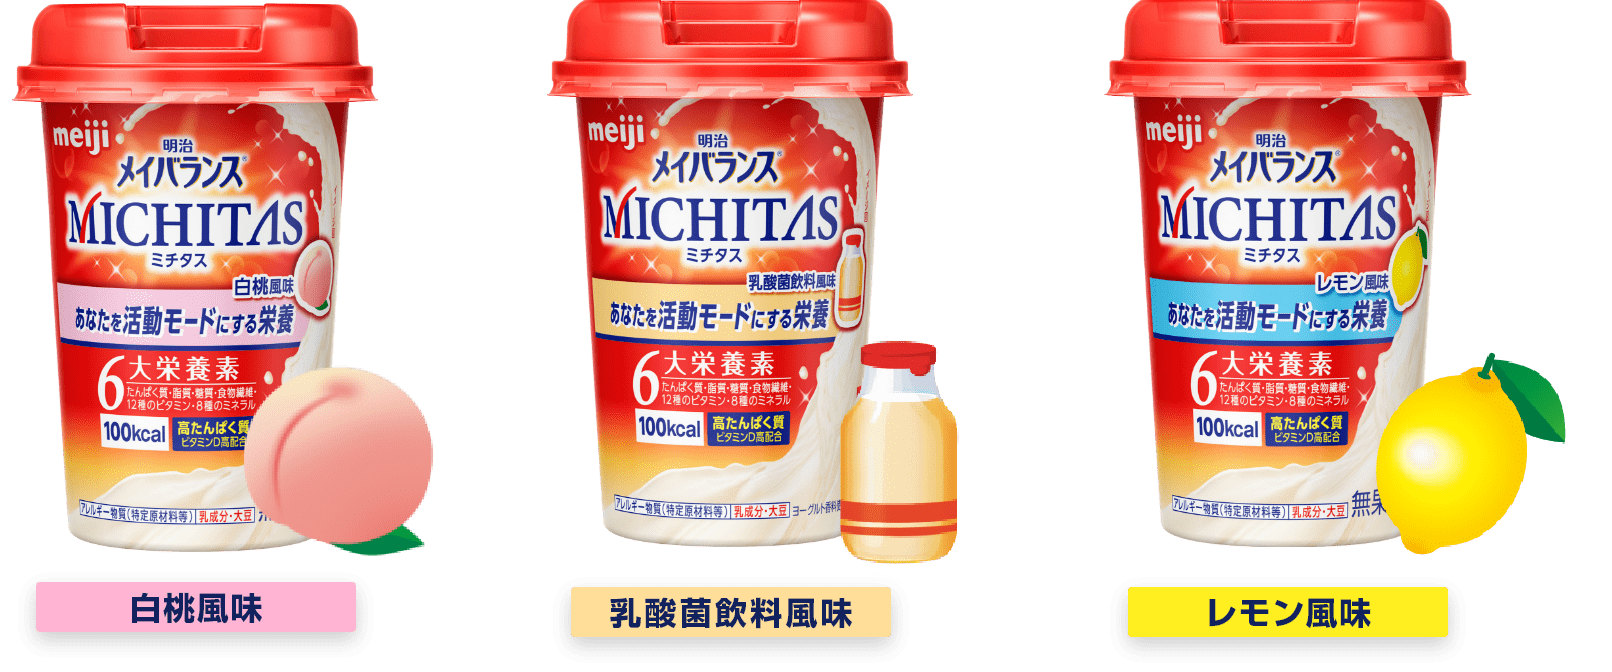 明治メイバランスMICHITAS | 株式会社 明治 - Meiji Co., Ltd.